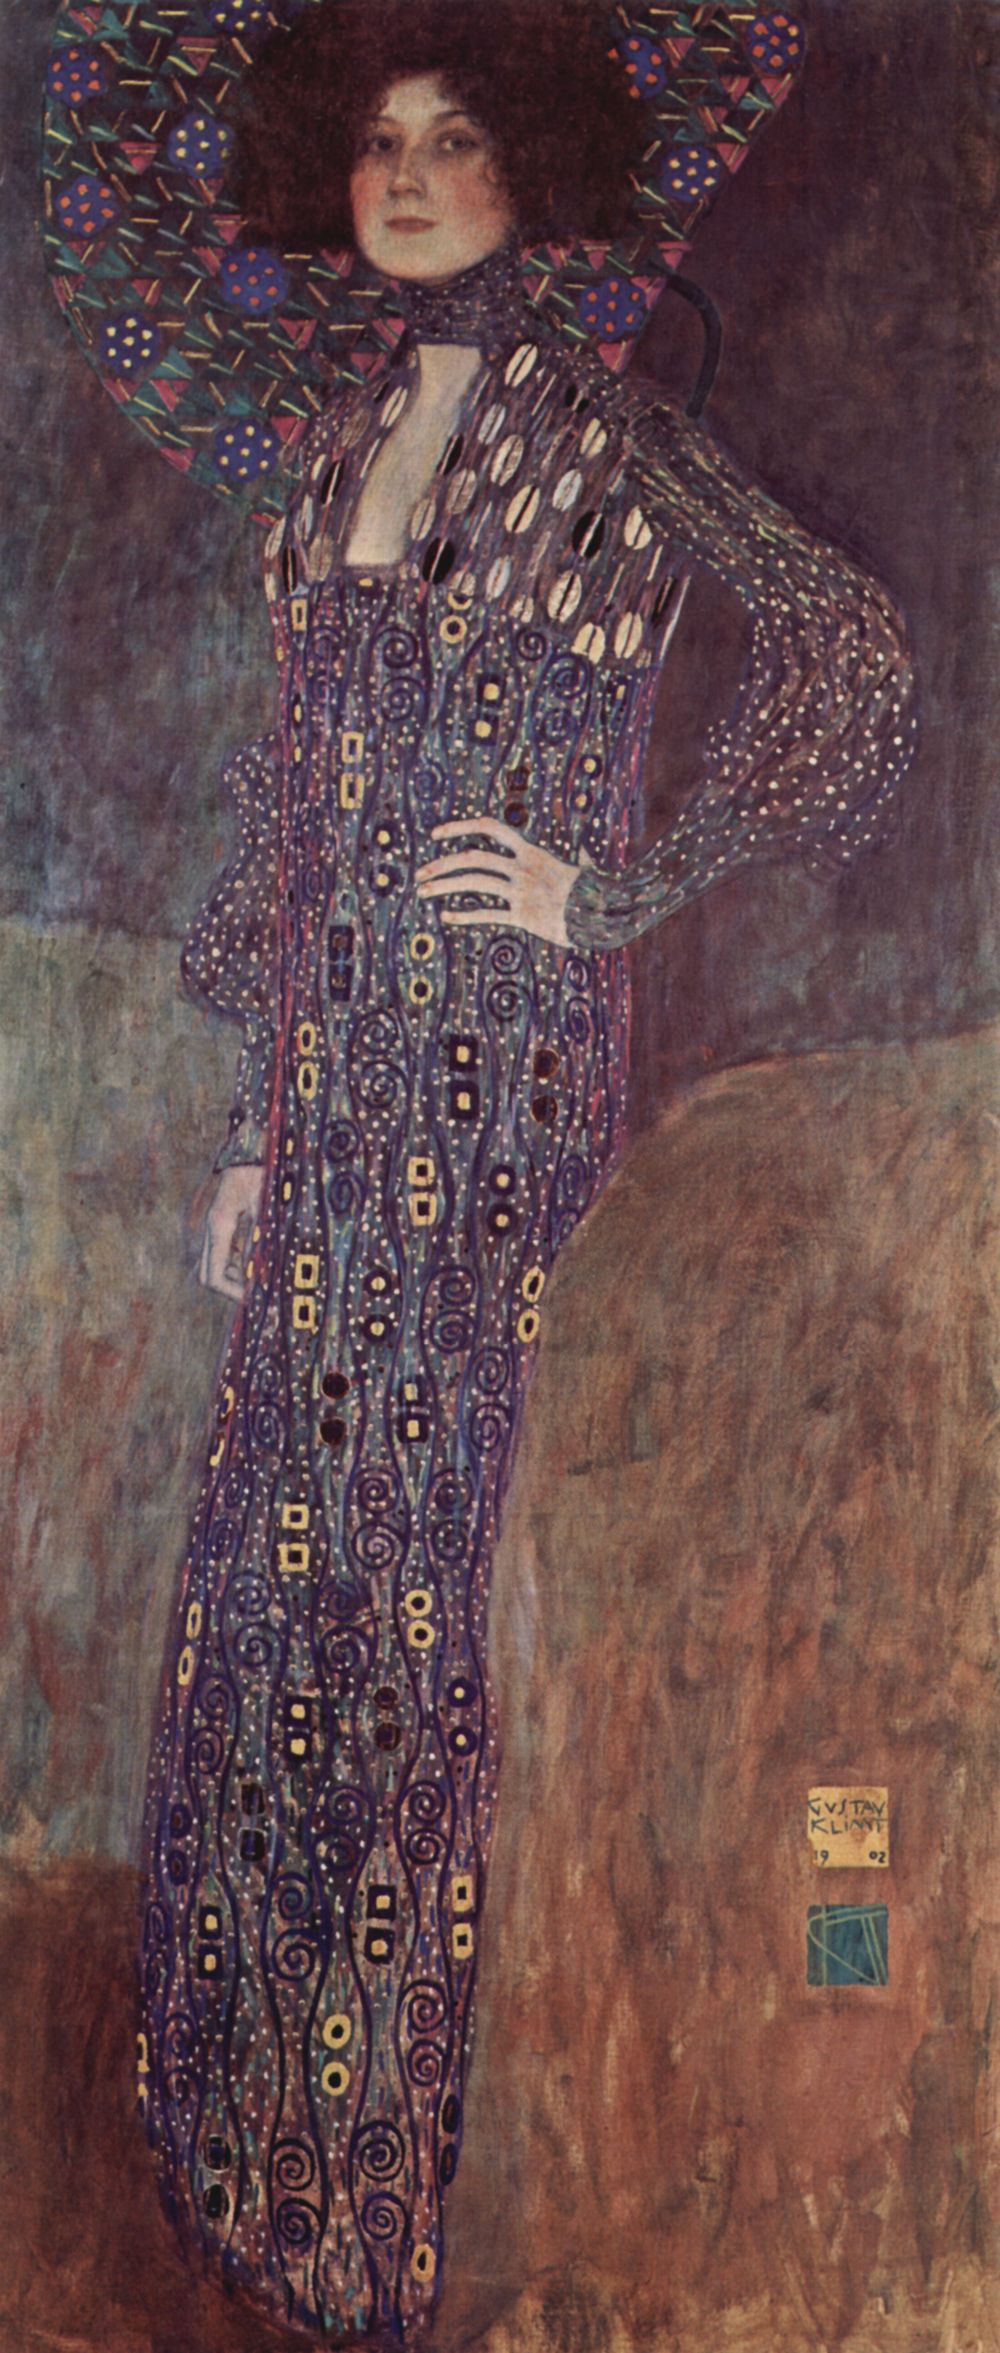 Portrait of Emilie Flöge (1902).